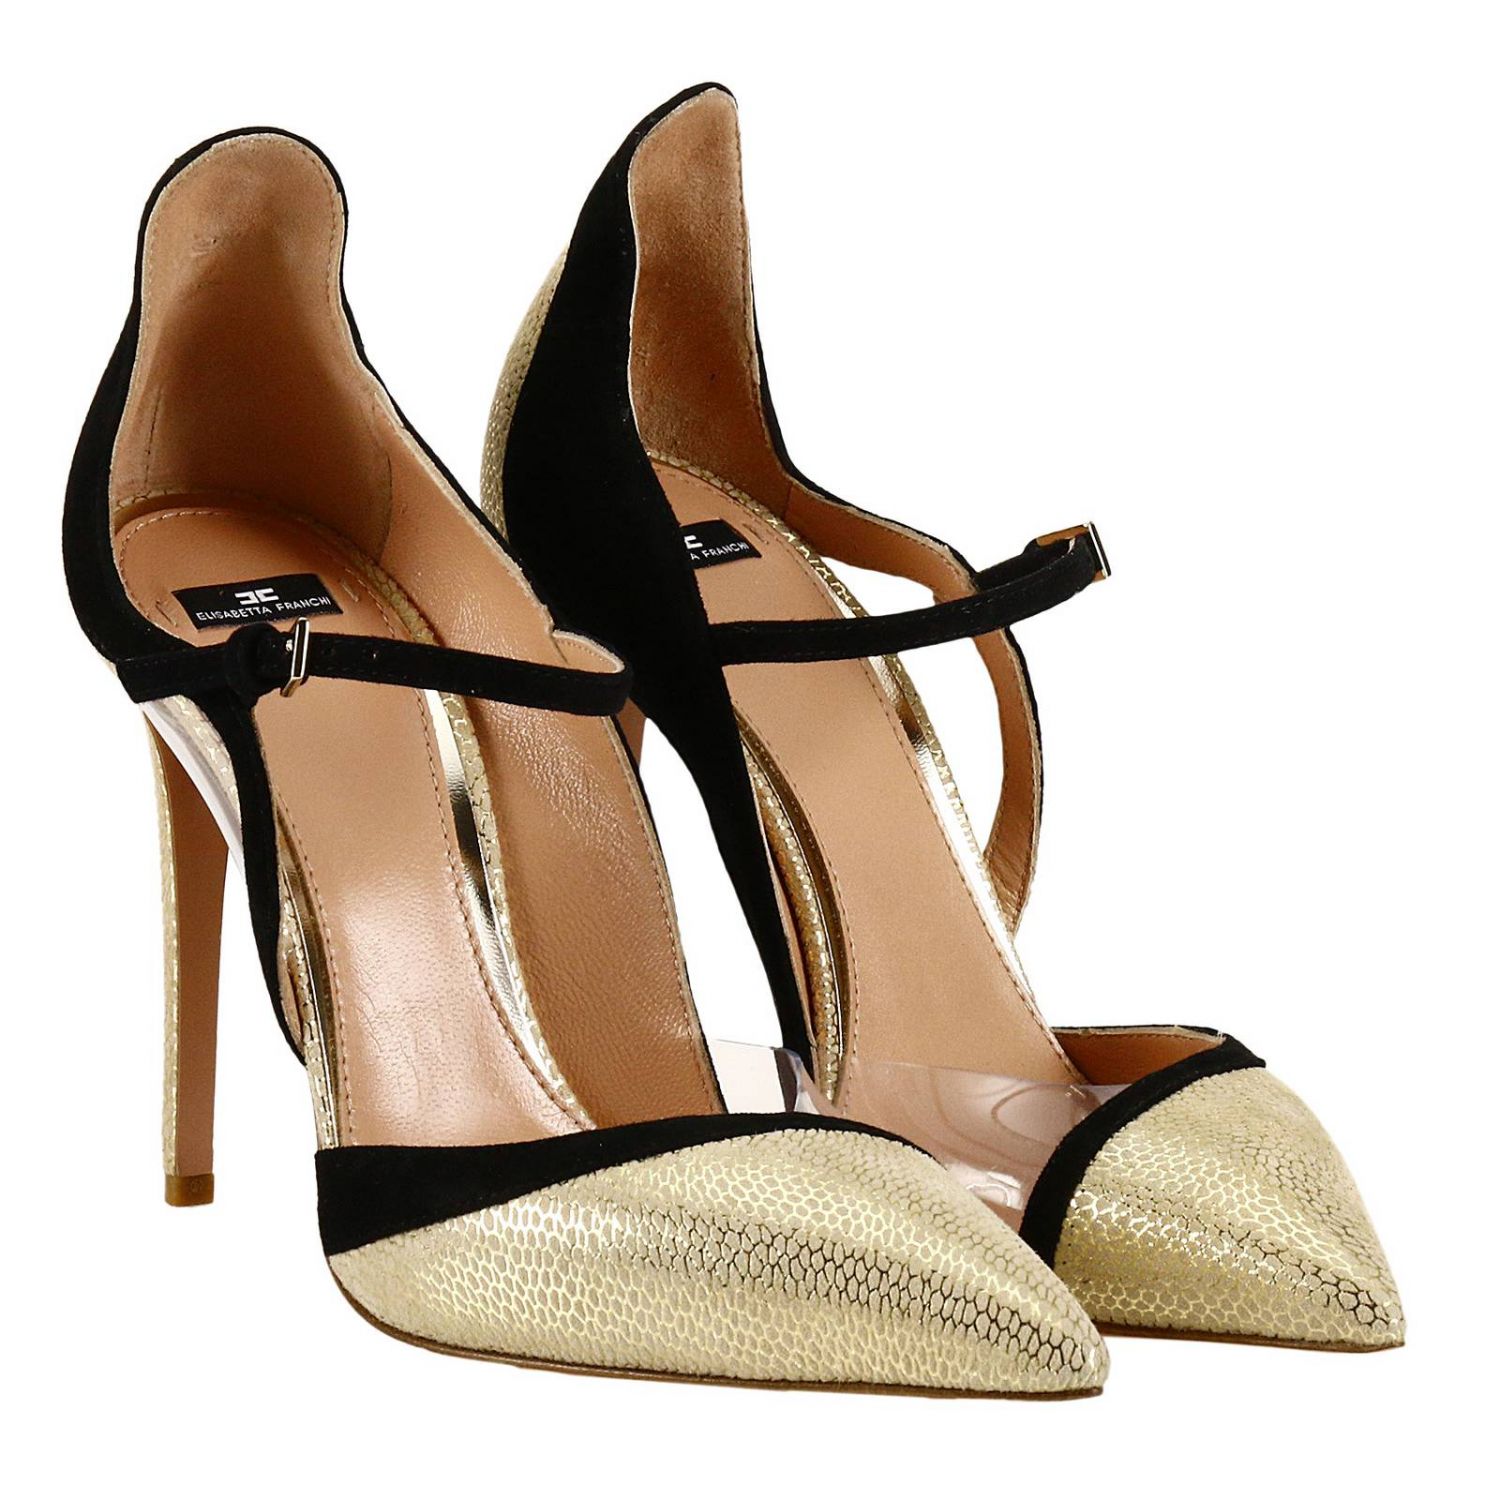 Elisabetta Franchi Outlet: High heel shoes women - Gold | High Heel ...